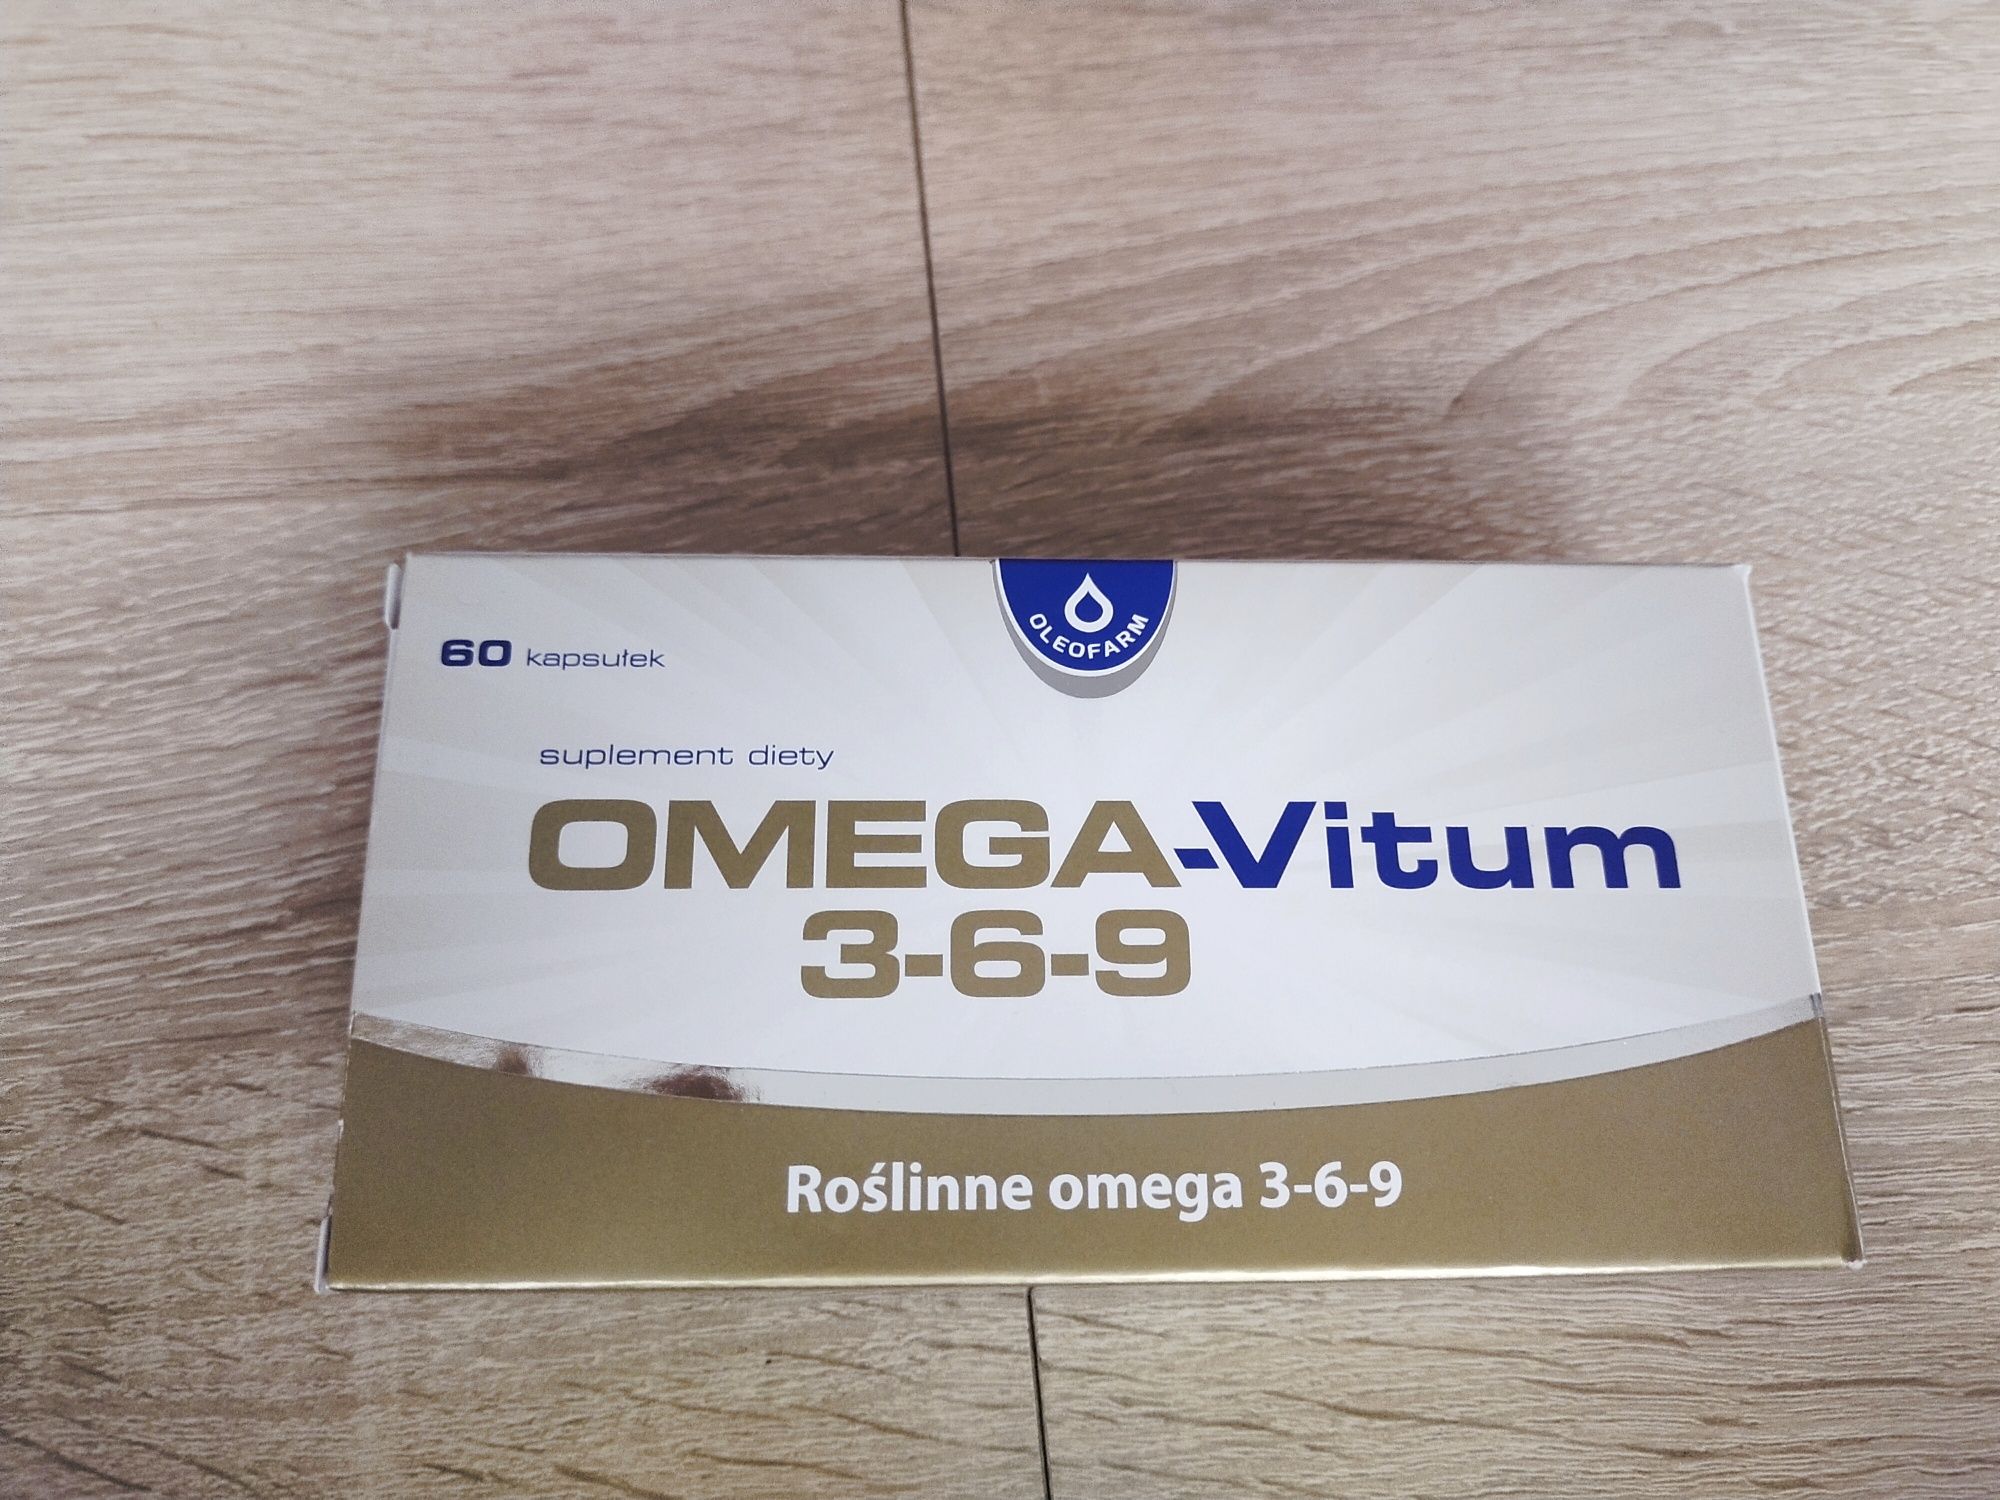 Kapsułki omega - vitum 3